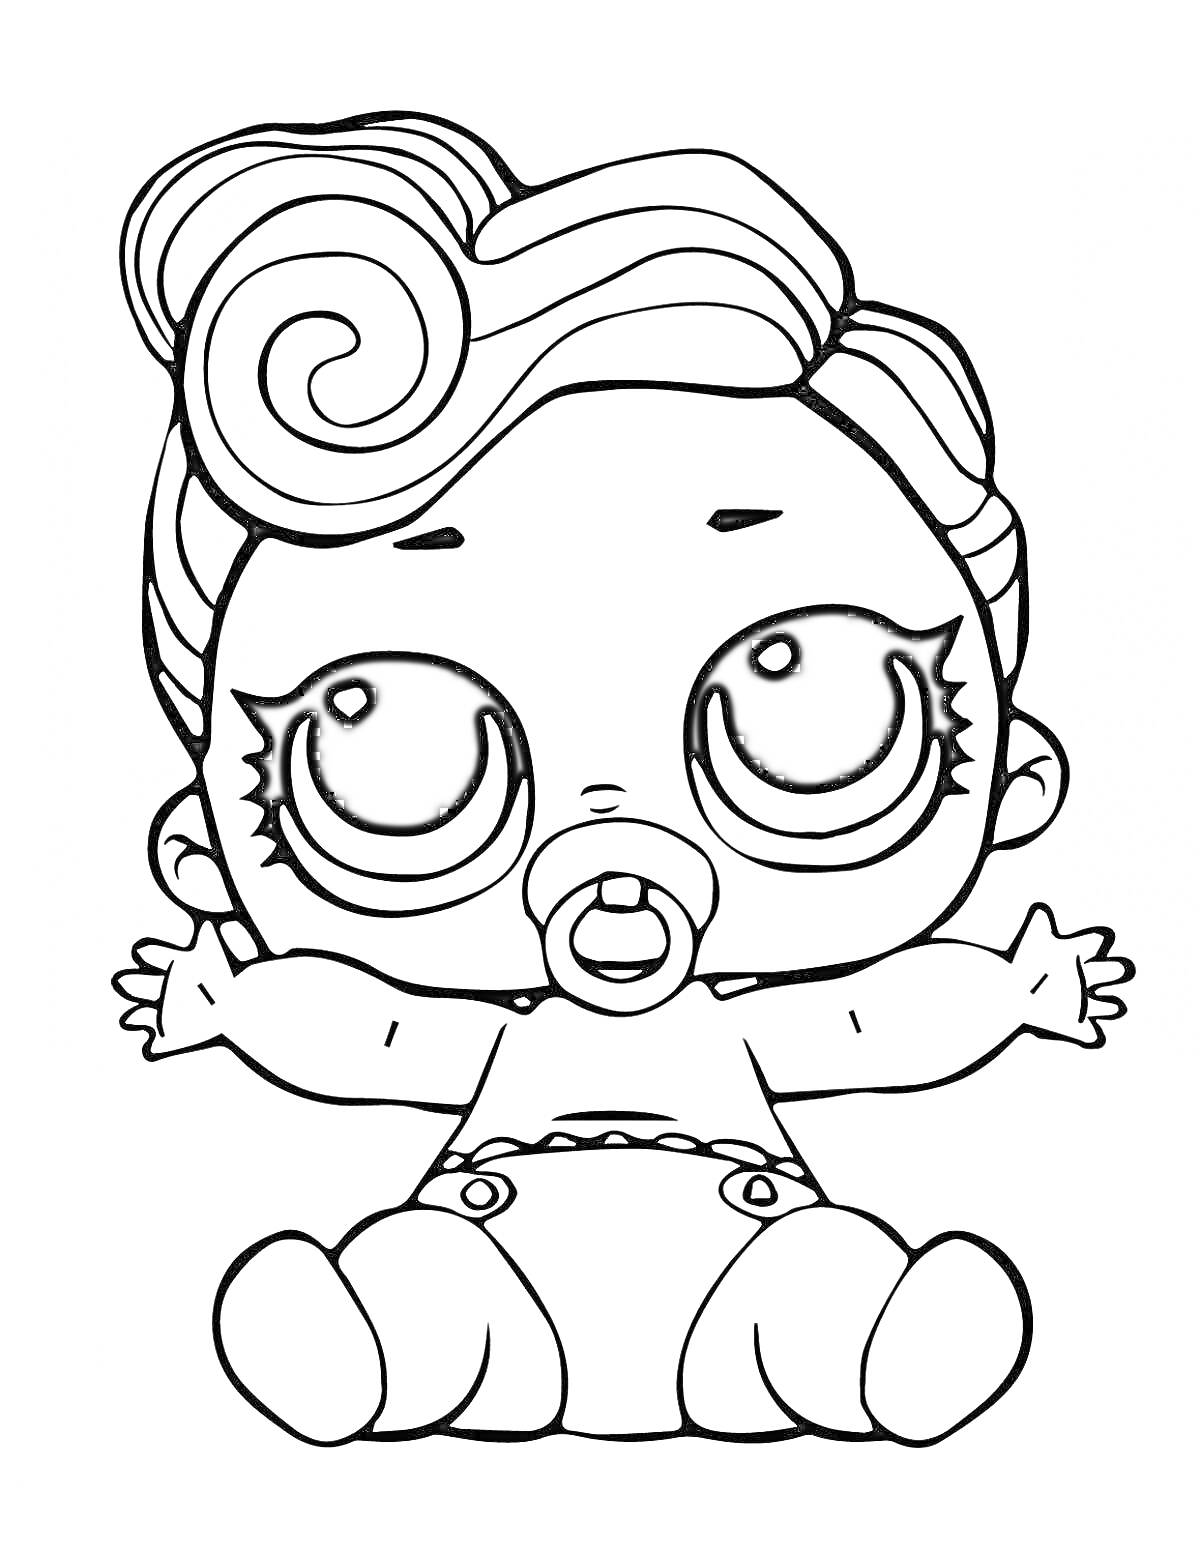 Раскраска Куколка LOL с большими глазами, соской и завитыми волосами, сидящая с раскинутыми руками